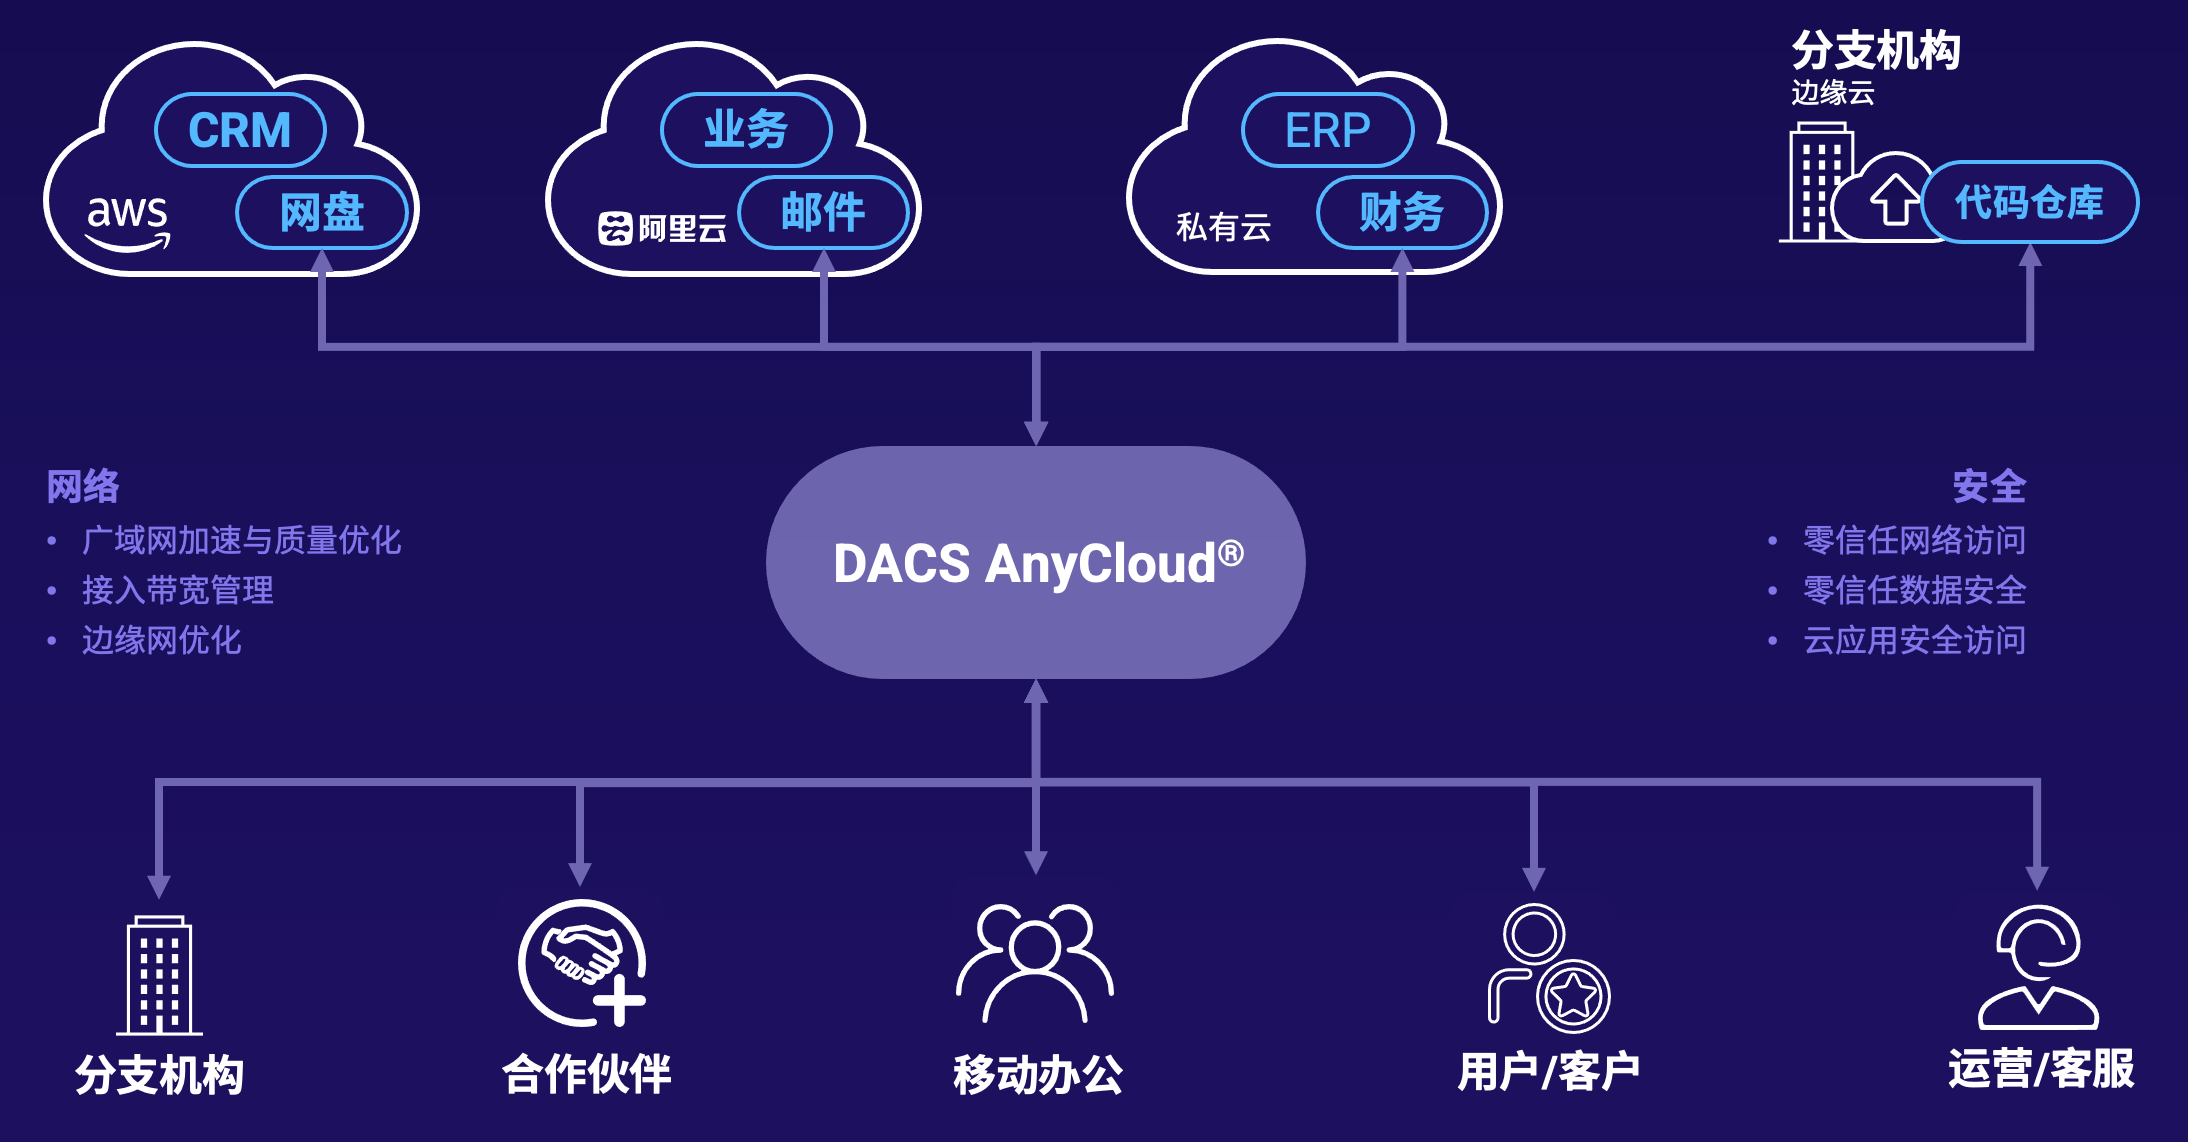 数篷科技发布SASE解决方案DACS AnyCloud®️ 助力企业数字化转型